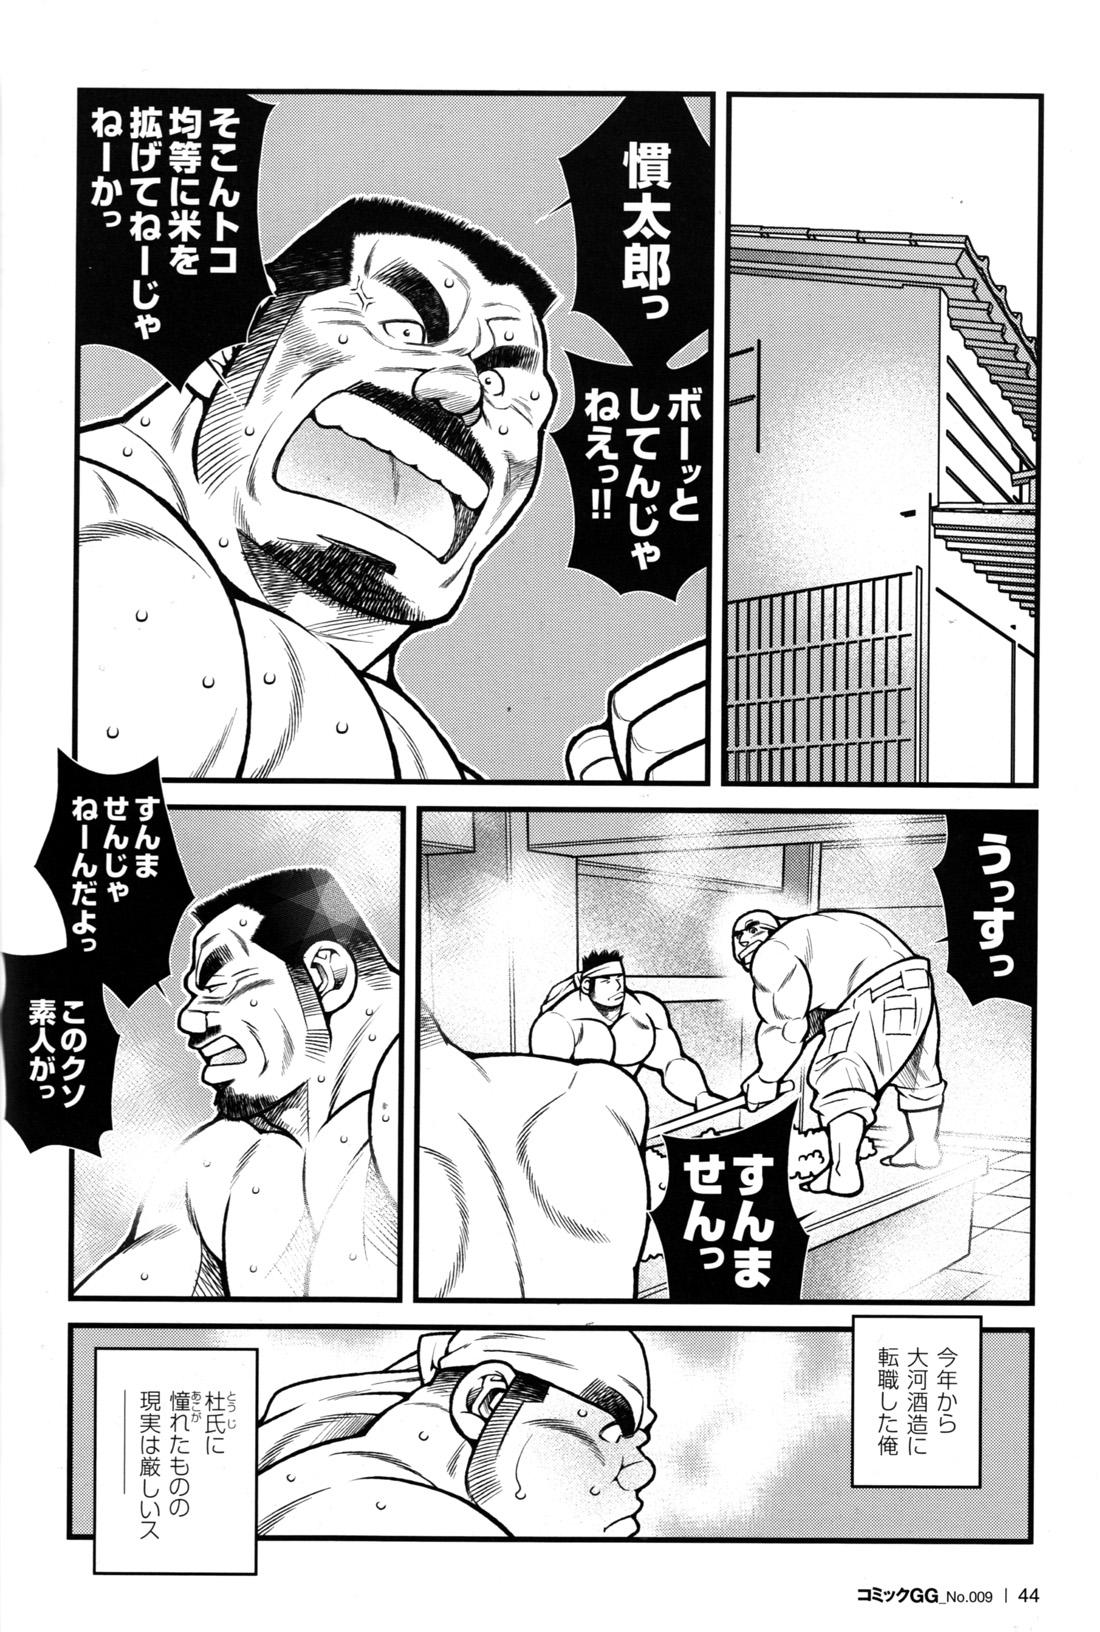 Comic G-men Gaho No.09 Gacchibi Zeme 41